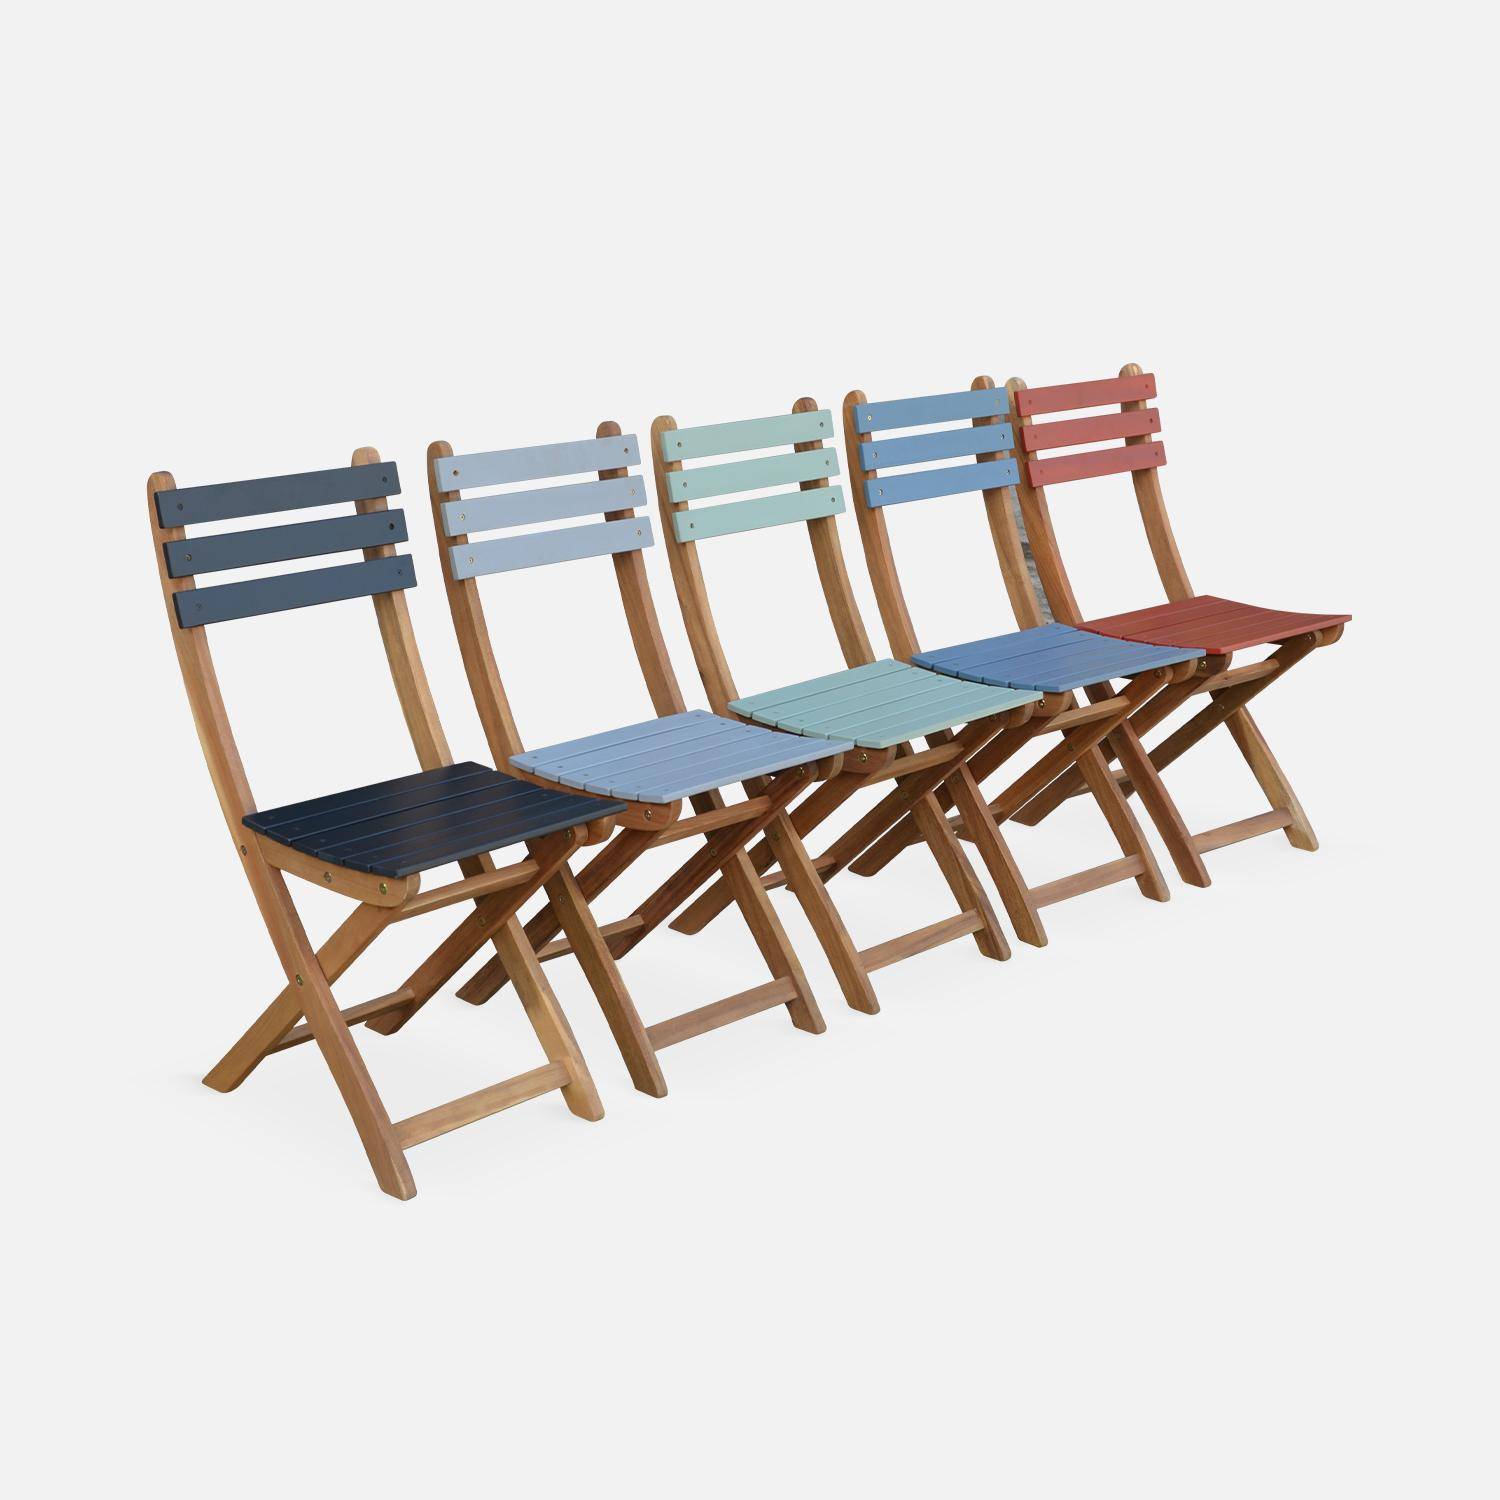 Bistro-Gartentisch aus Holz 60x60cm - Barcelona Holz / blaugrau - zweifarbig quadratisch Klappbar aus Akazie mit 2 Klappstühlen Photo8